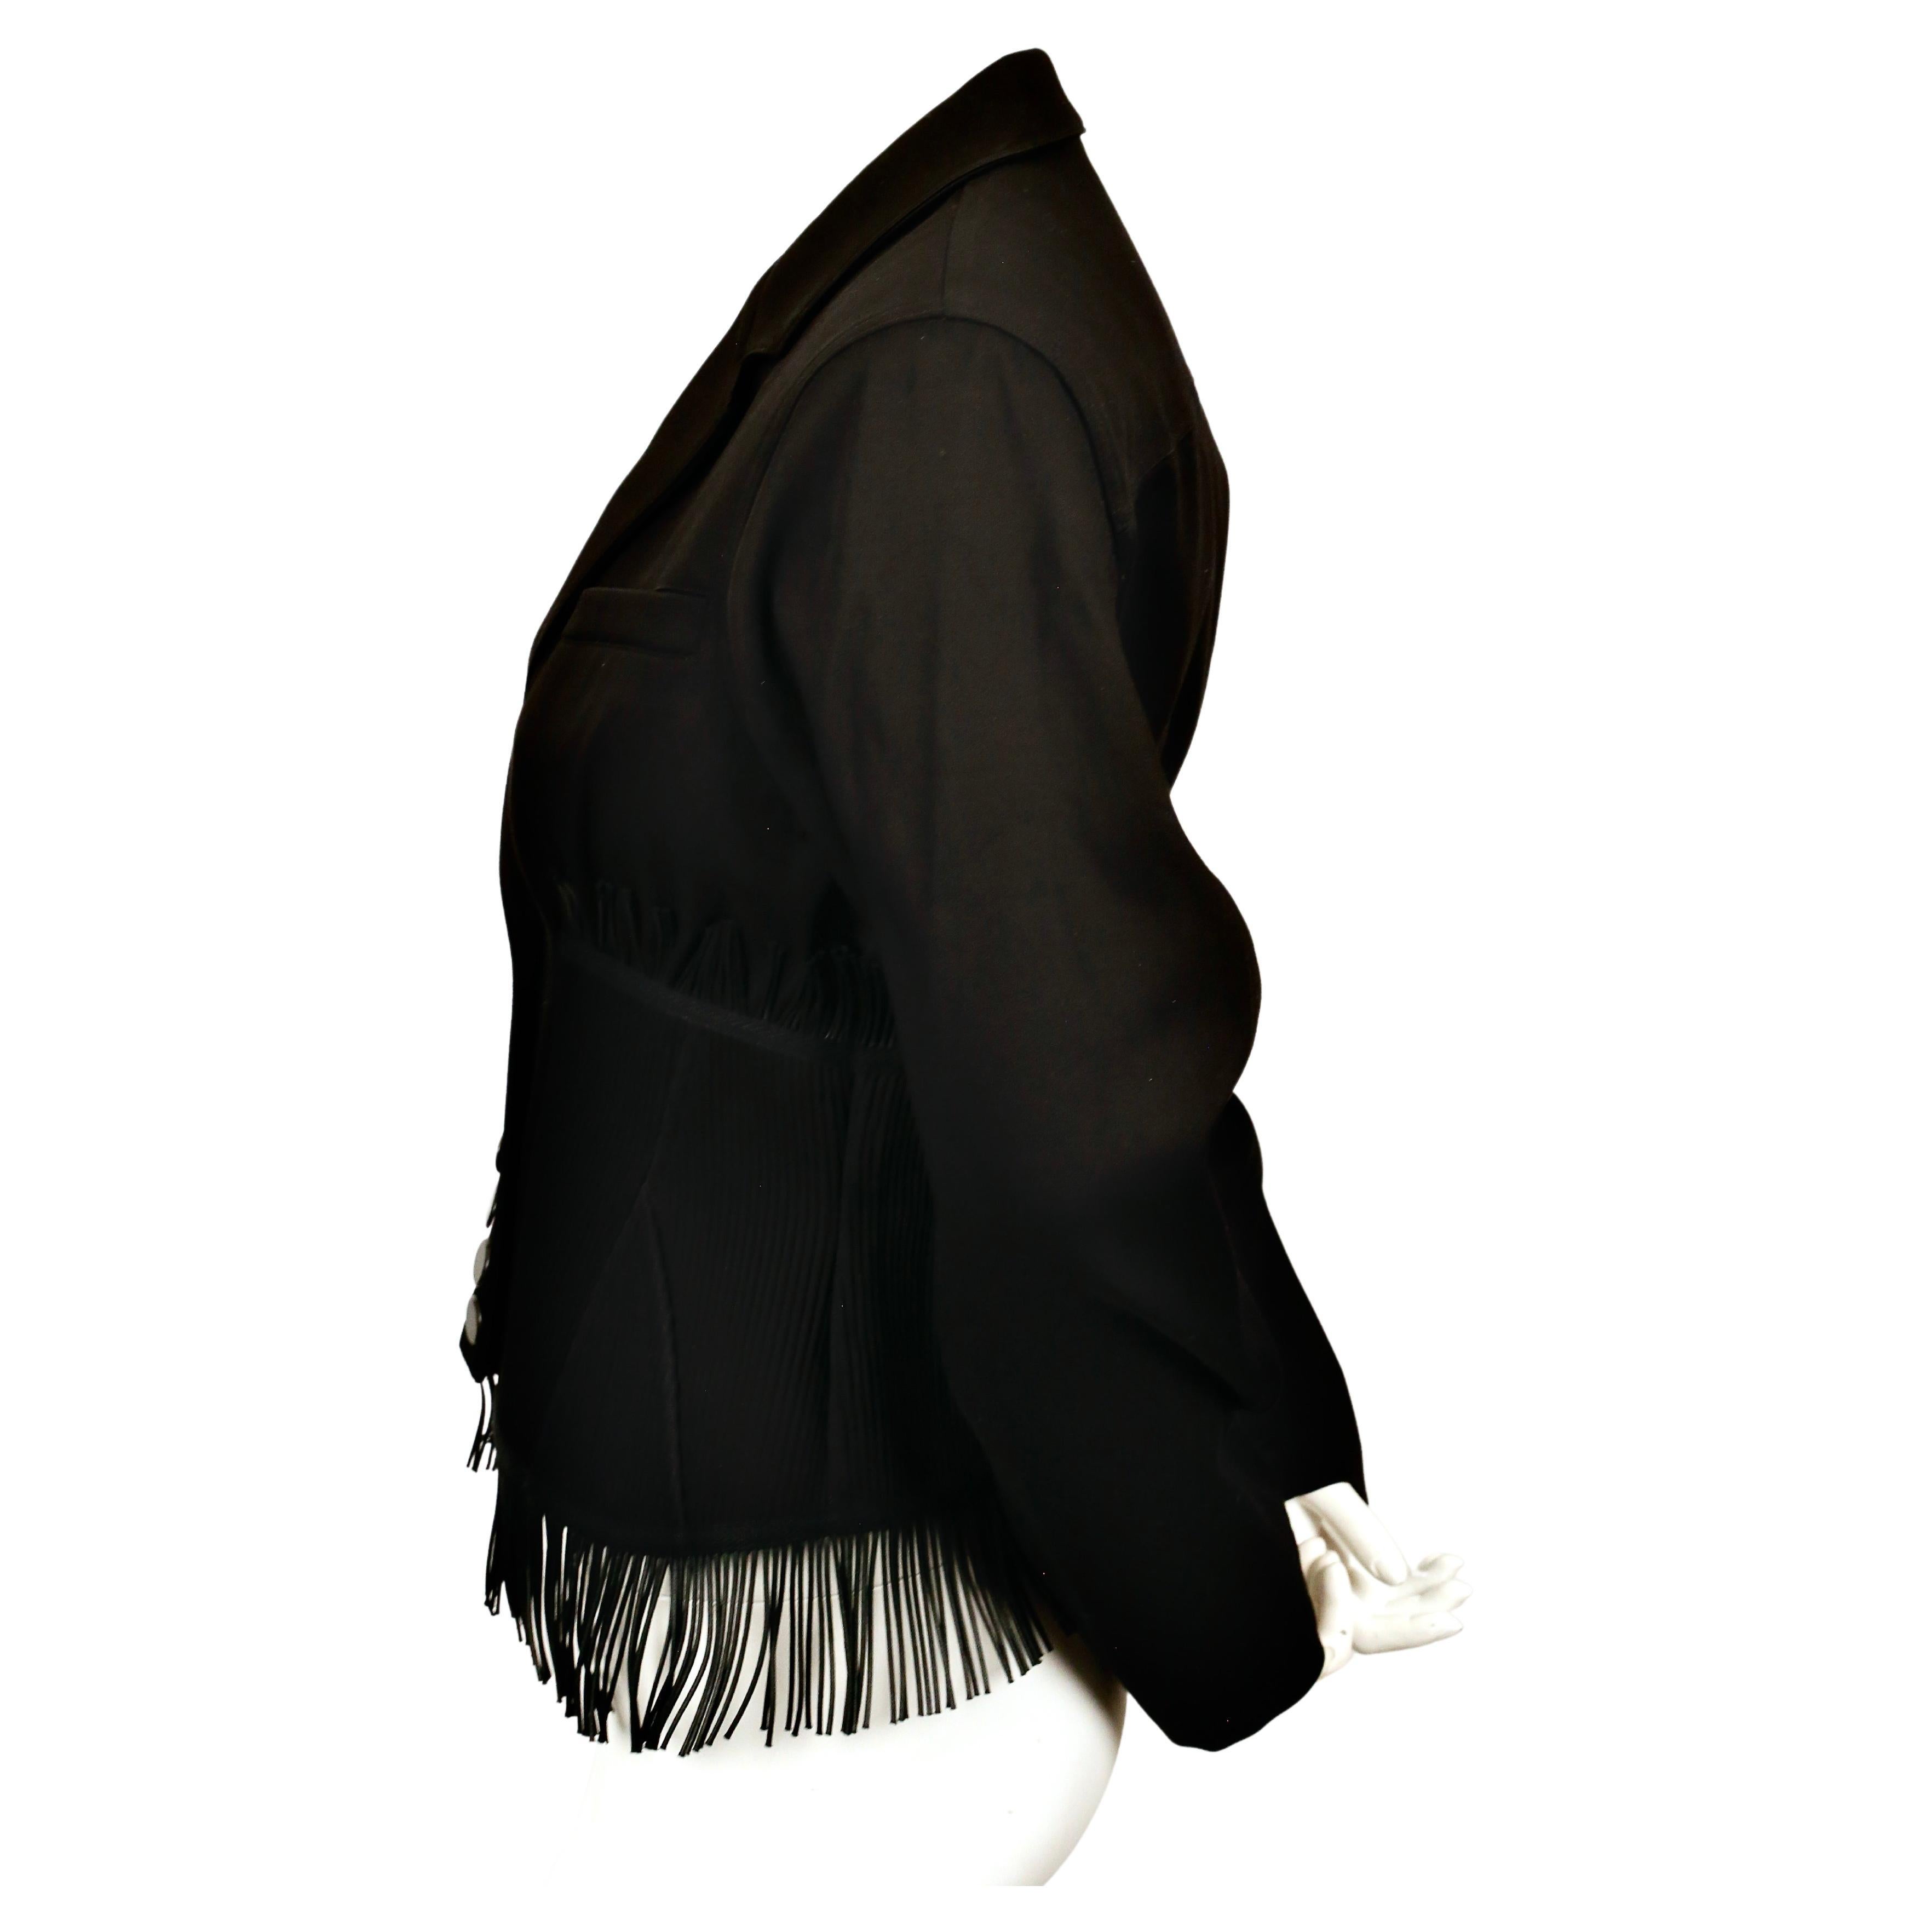 Tiefschwarze Korsettjacke aus Baumwoll-Gabardine mit abgesteppten Einsätzen, Bügeln und Fransendetails von Azzedine Alaia. Diese Jacke ist eine Neuauflage der Frühjahrsjacke von 1998. Französische Größe 38 (fällt in der Taille schmal aus). Ungefähre